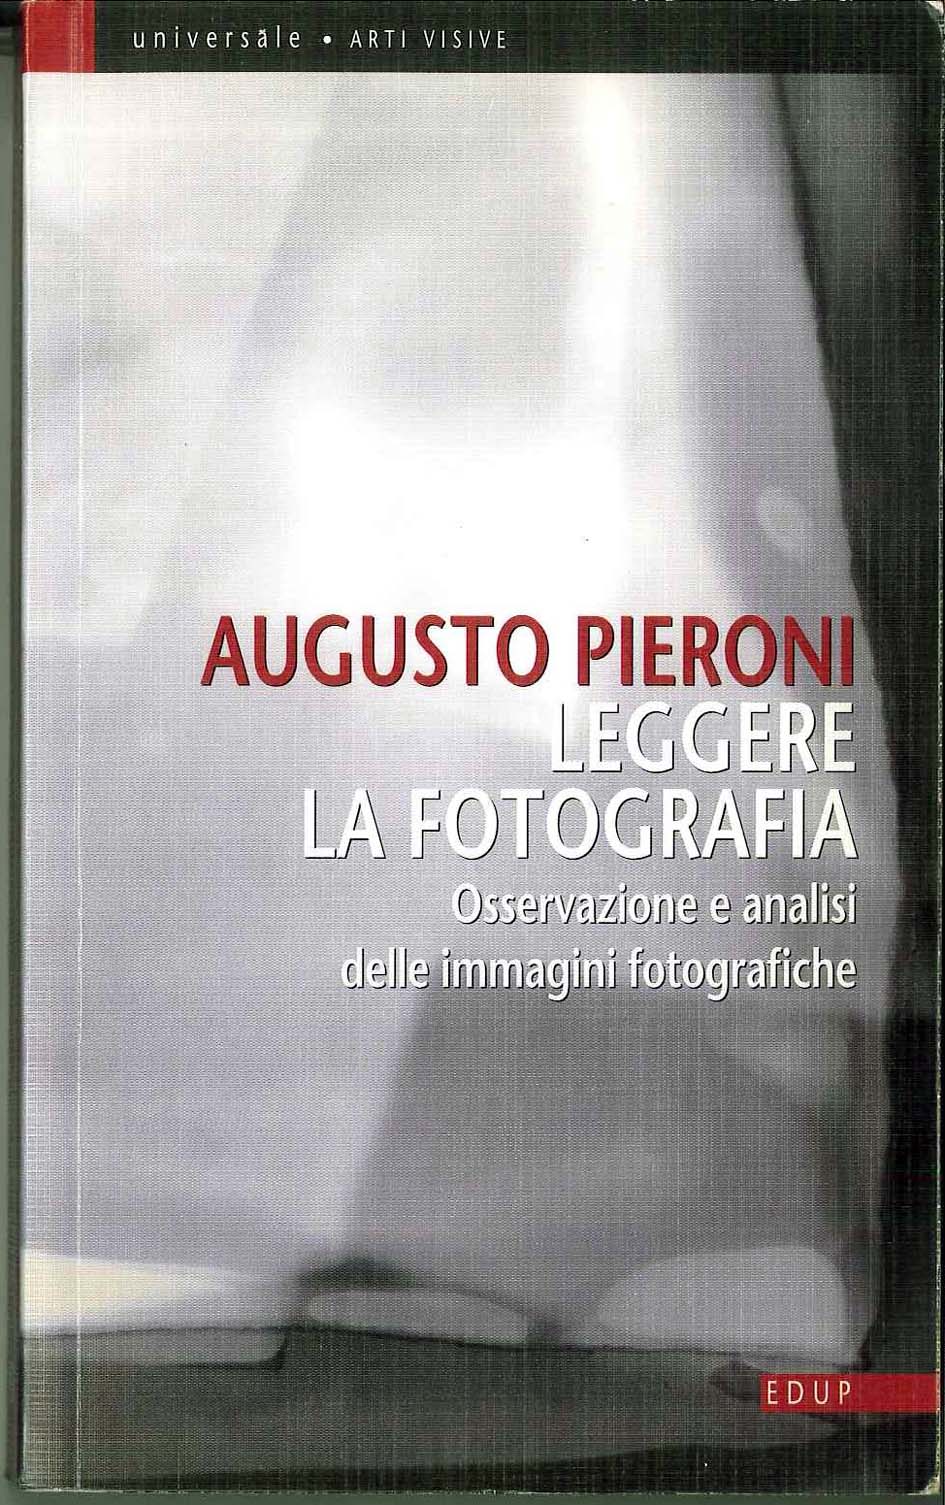 Augusto Pieroni